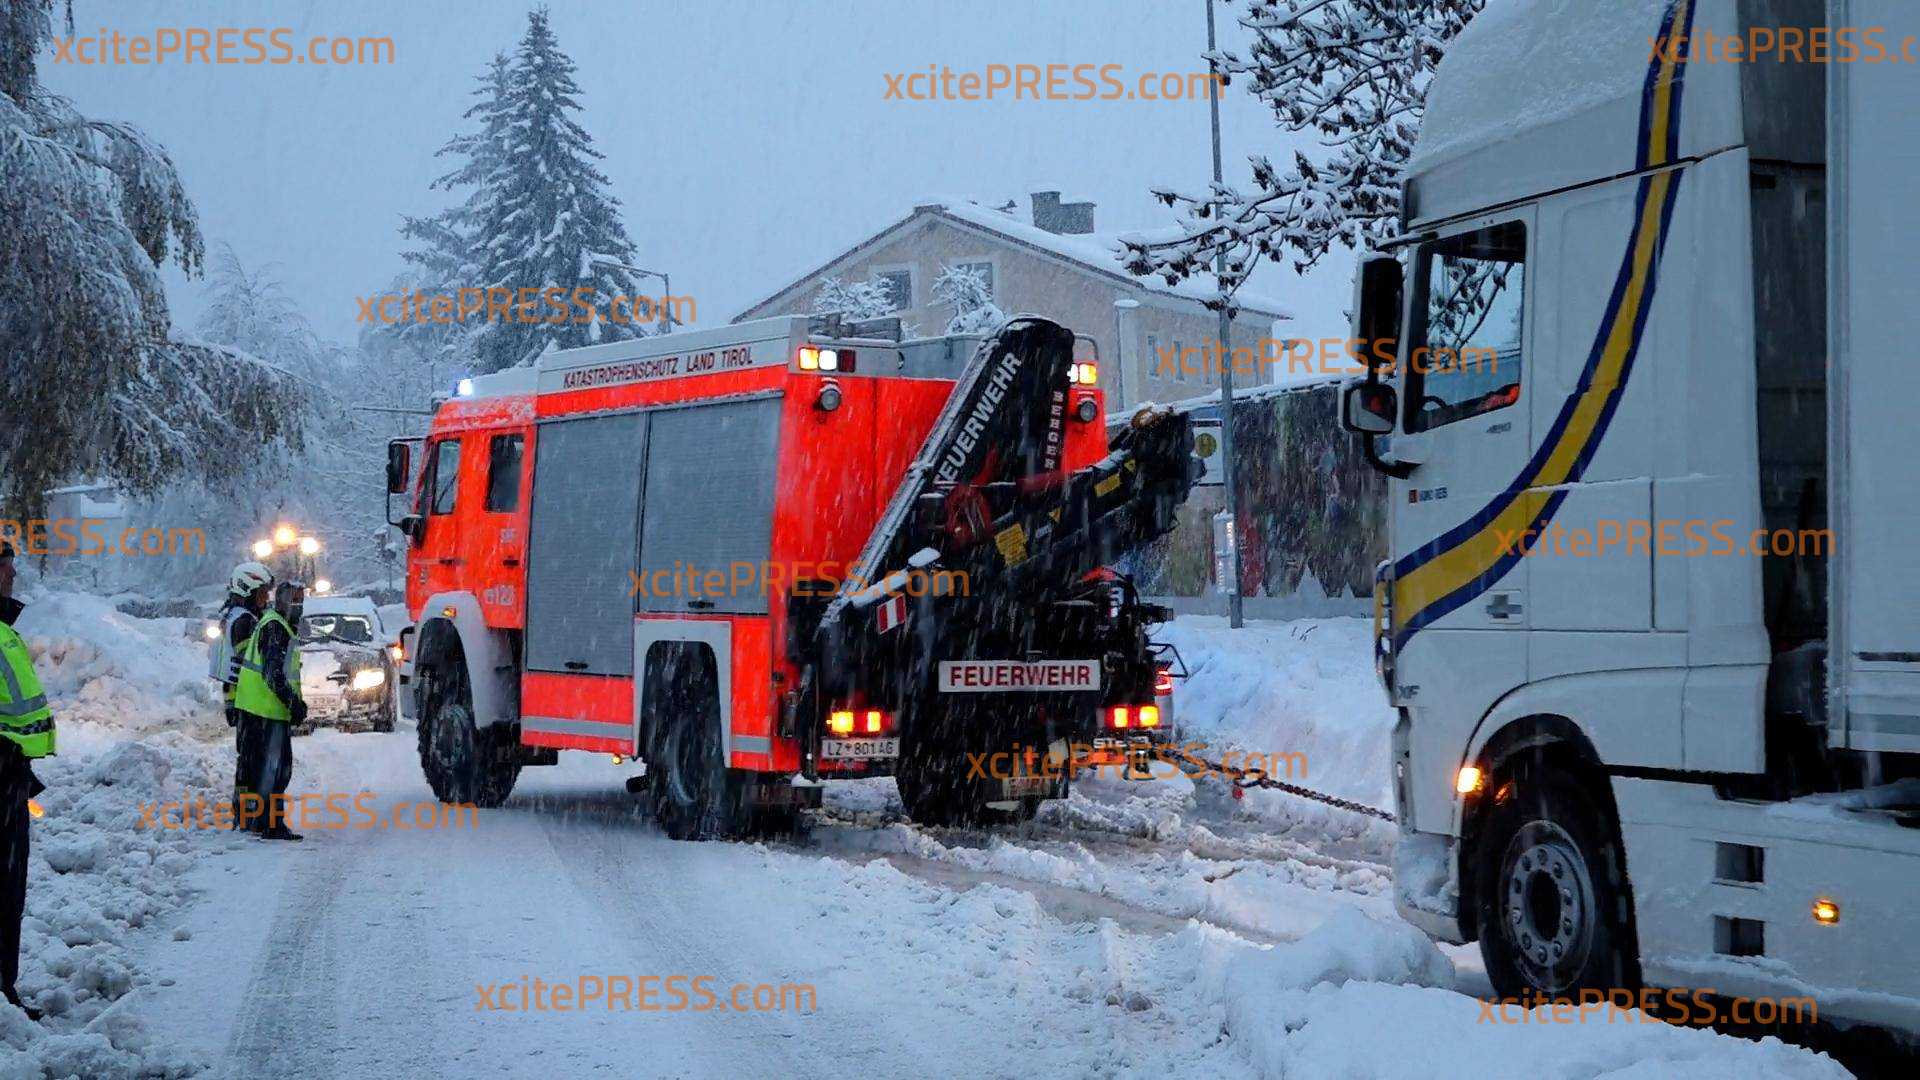 Lage in Osttirol spitzt sich weiter zu - besorgniserregende Situation: Einsatzkräfte riegeln Ortschaften ab - immer wieder bleiben LKW-Fahrer in Schneemassen stecken